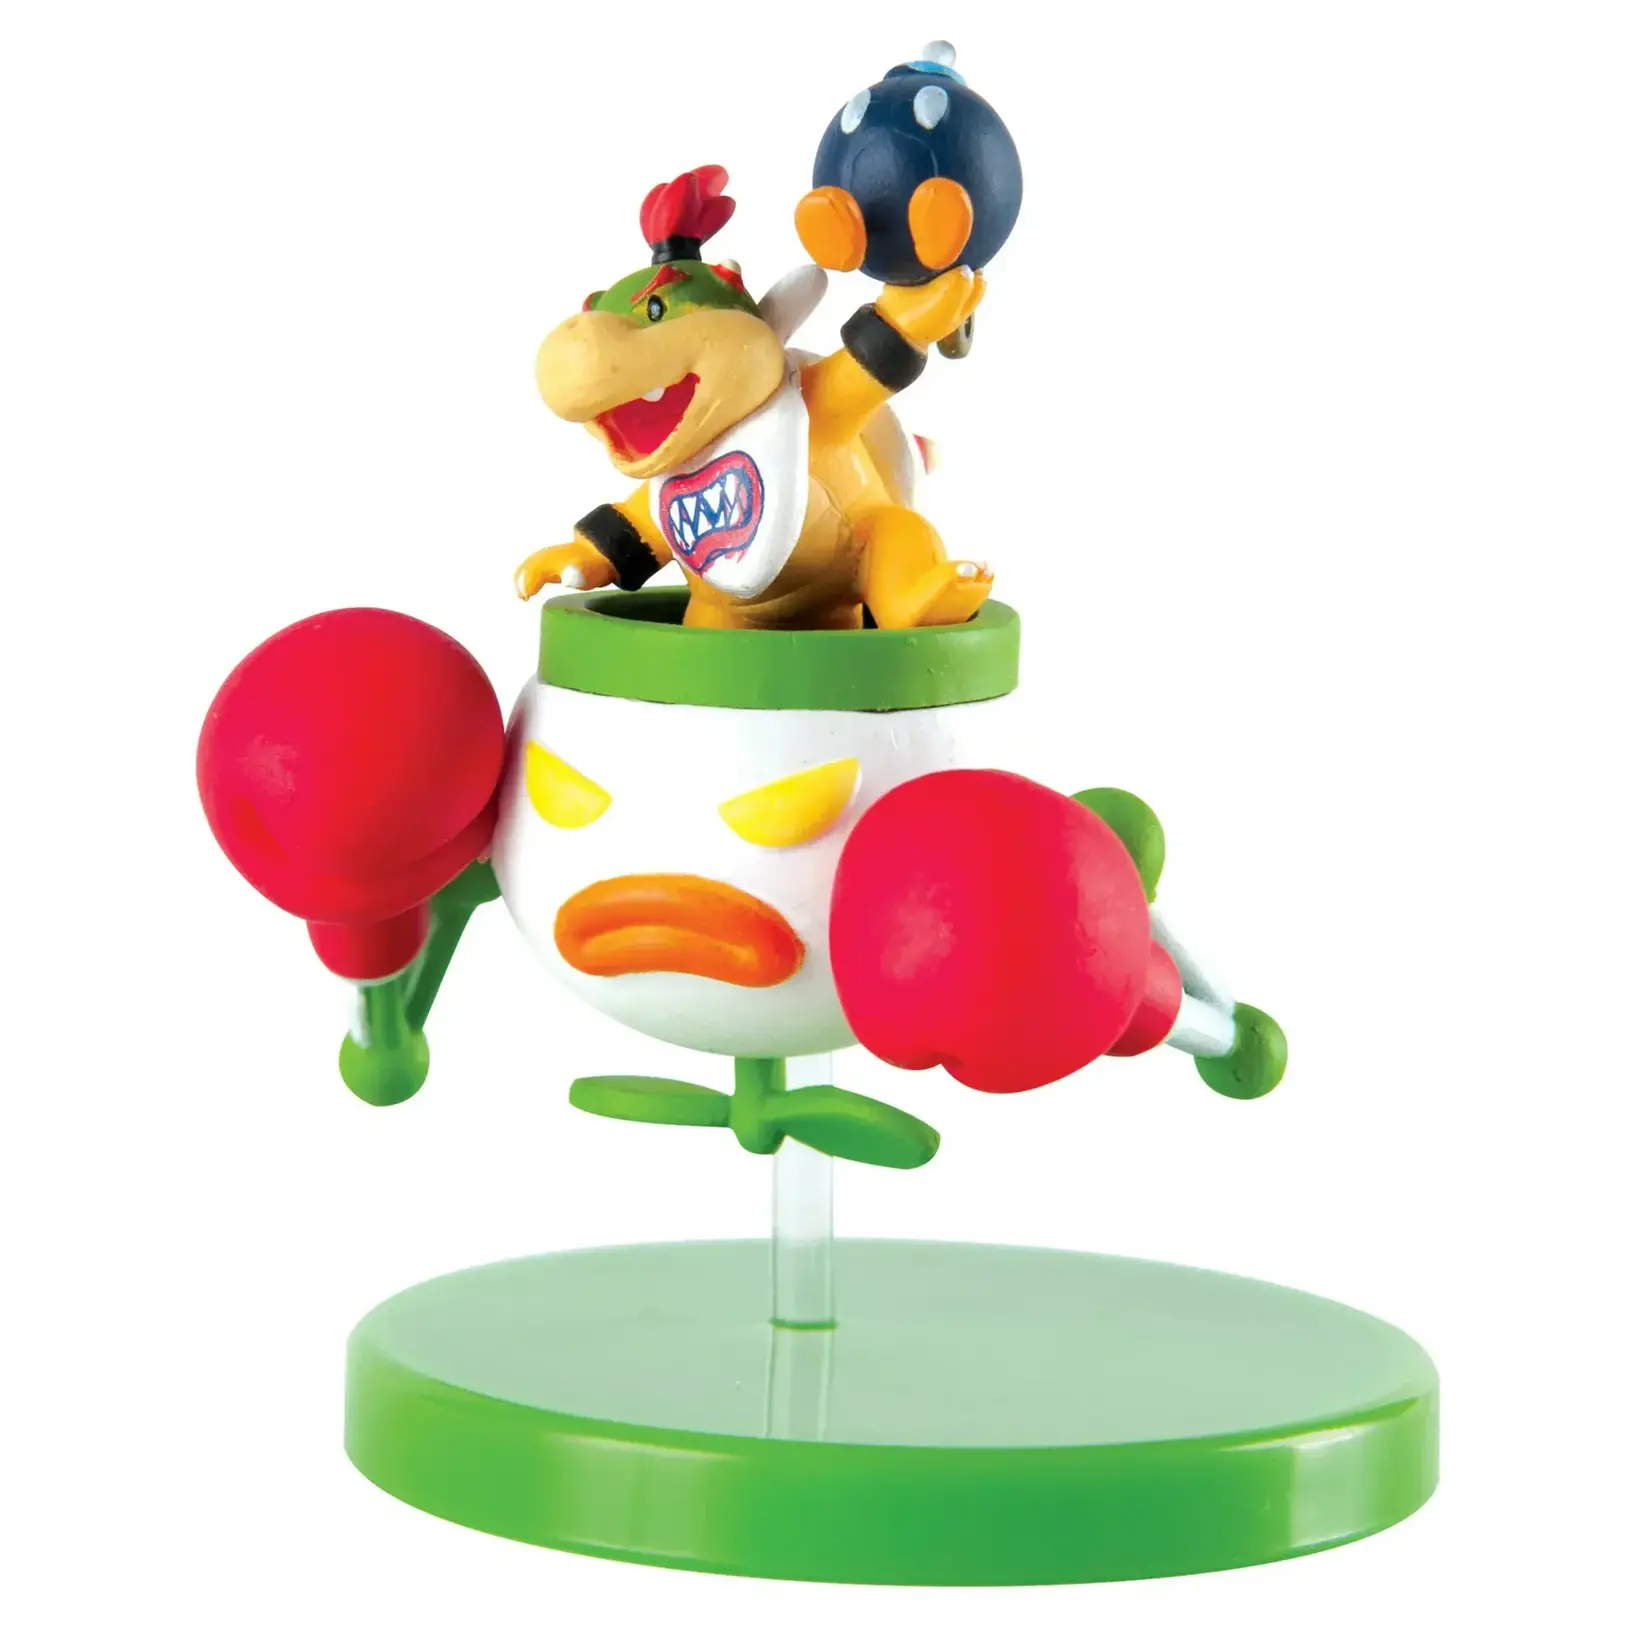 TOMY Super Mario - Buildable Figurine Capsule